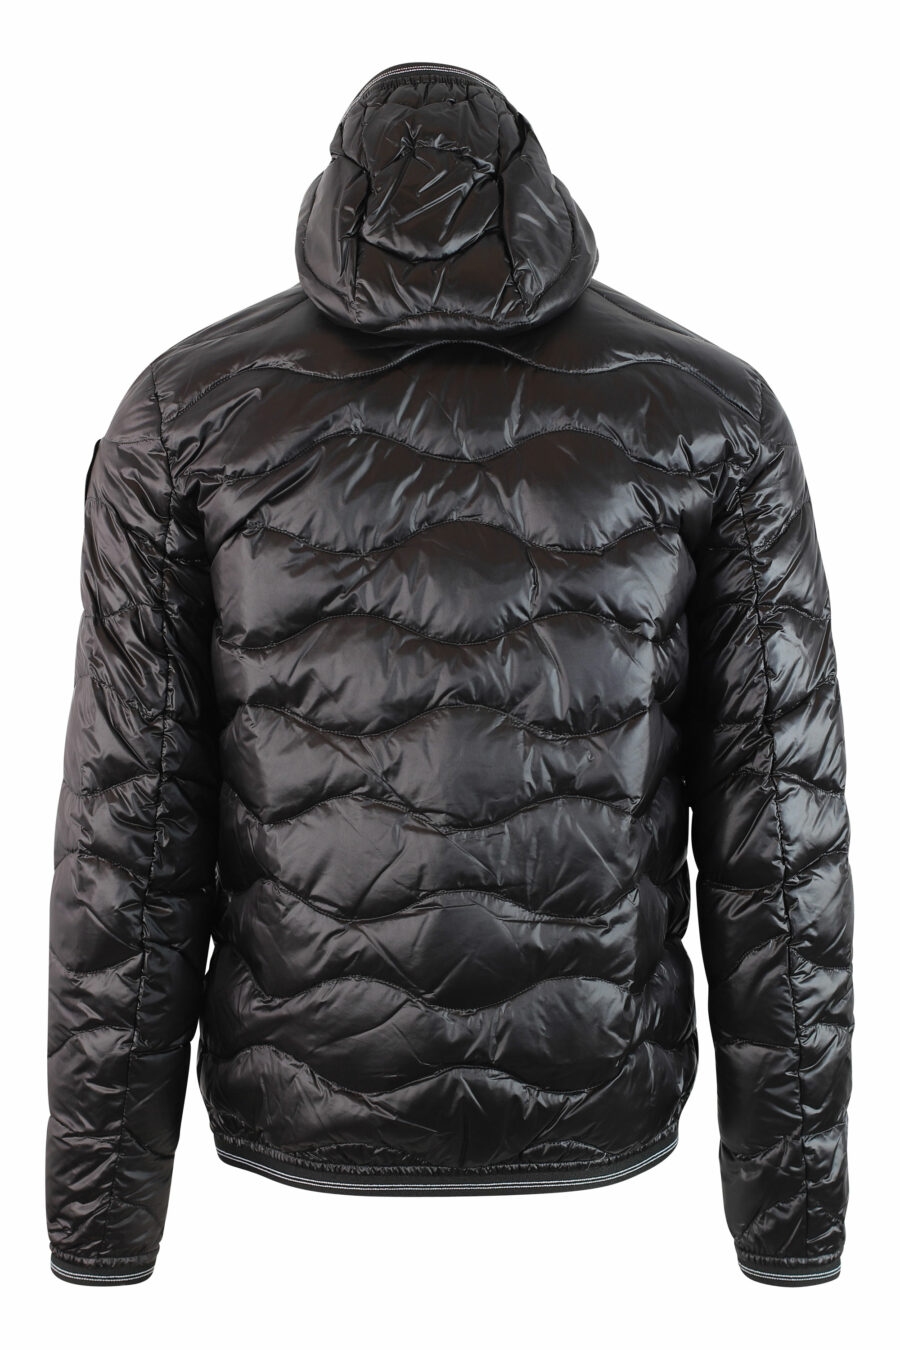 Schwarze Jacke mit Wellenlinien und Aufnäher - IMG 9801